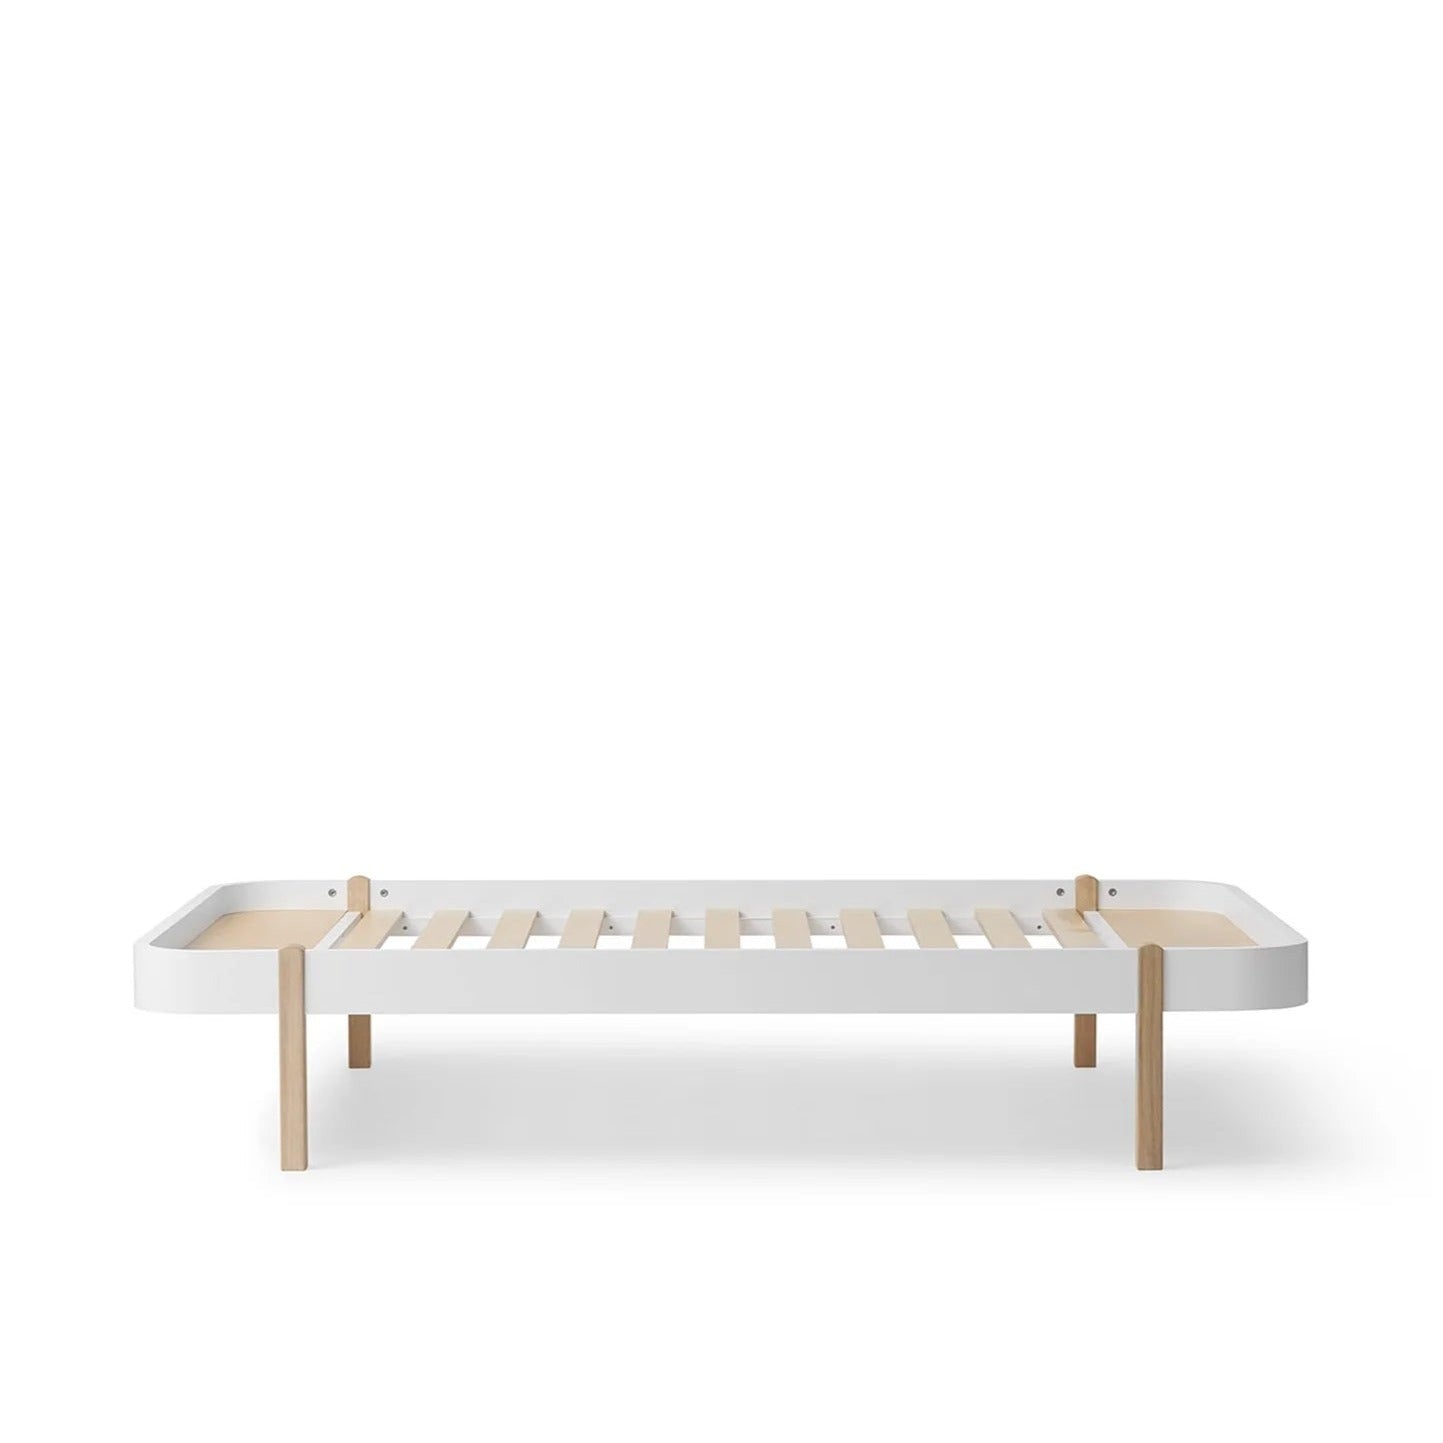 Oliver Furniture Wood Lounger Bed 120 - White/Oak